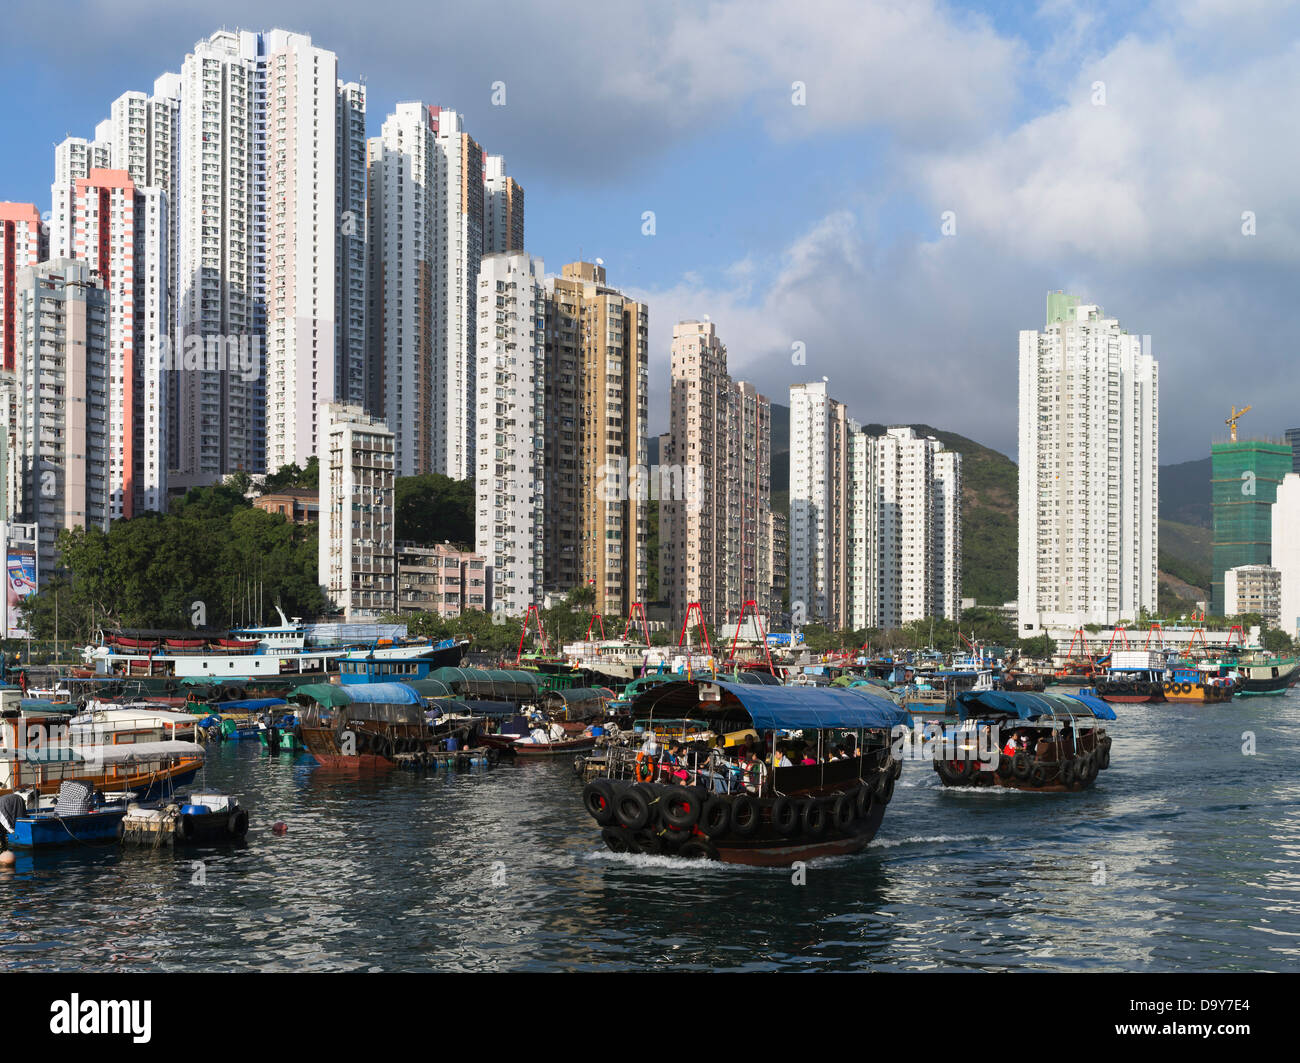 dh Aberdeen Harbour ABERDEEN HONG KONG Chinese tourist  sampan high rise residential skyscraper flats island boats Stock Photo